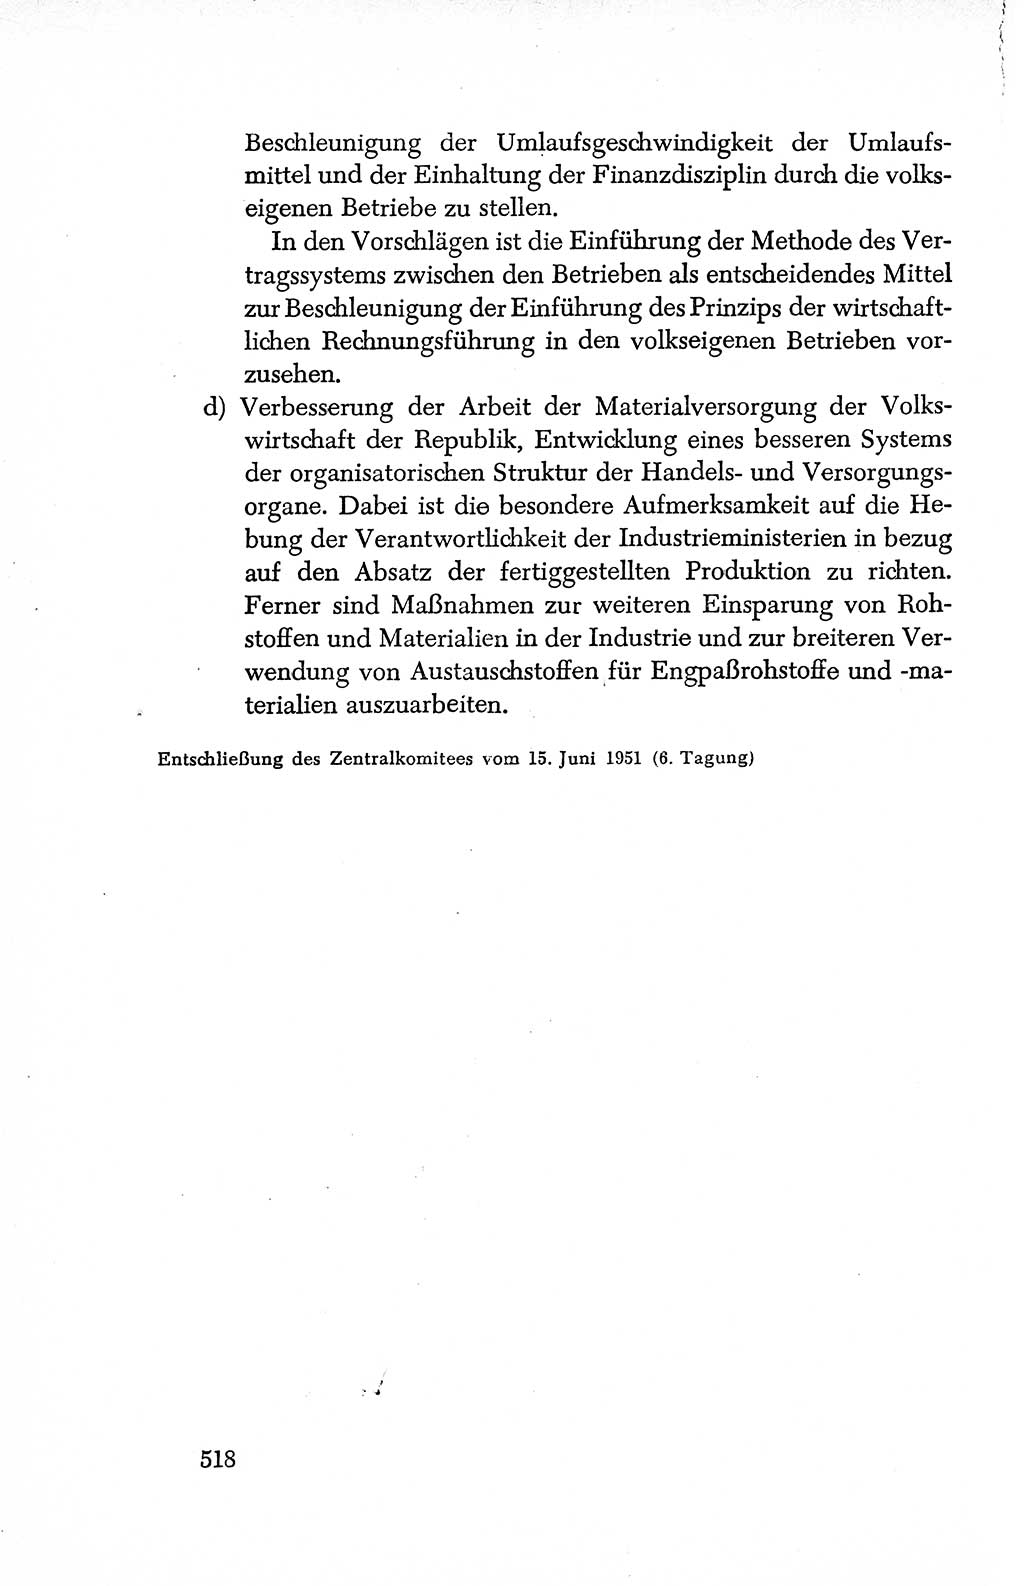 Dokumente der Sozialistischen Einheitspartei Deutschlands (SED) [Deutsche Demokratische Republik (DDR)] 1950-1952, Seite 518 (Dok. SED DDR 1950-1952, S. 518)